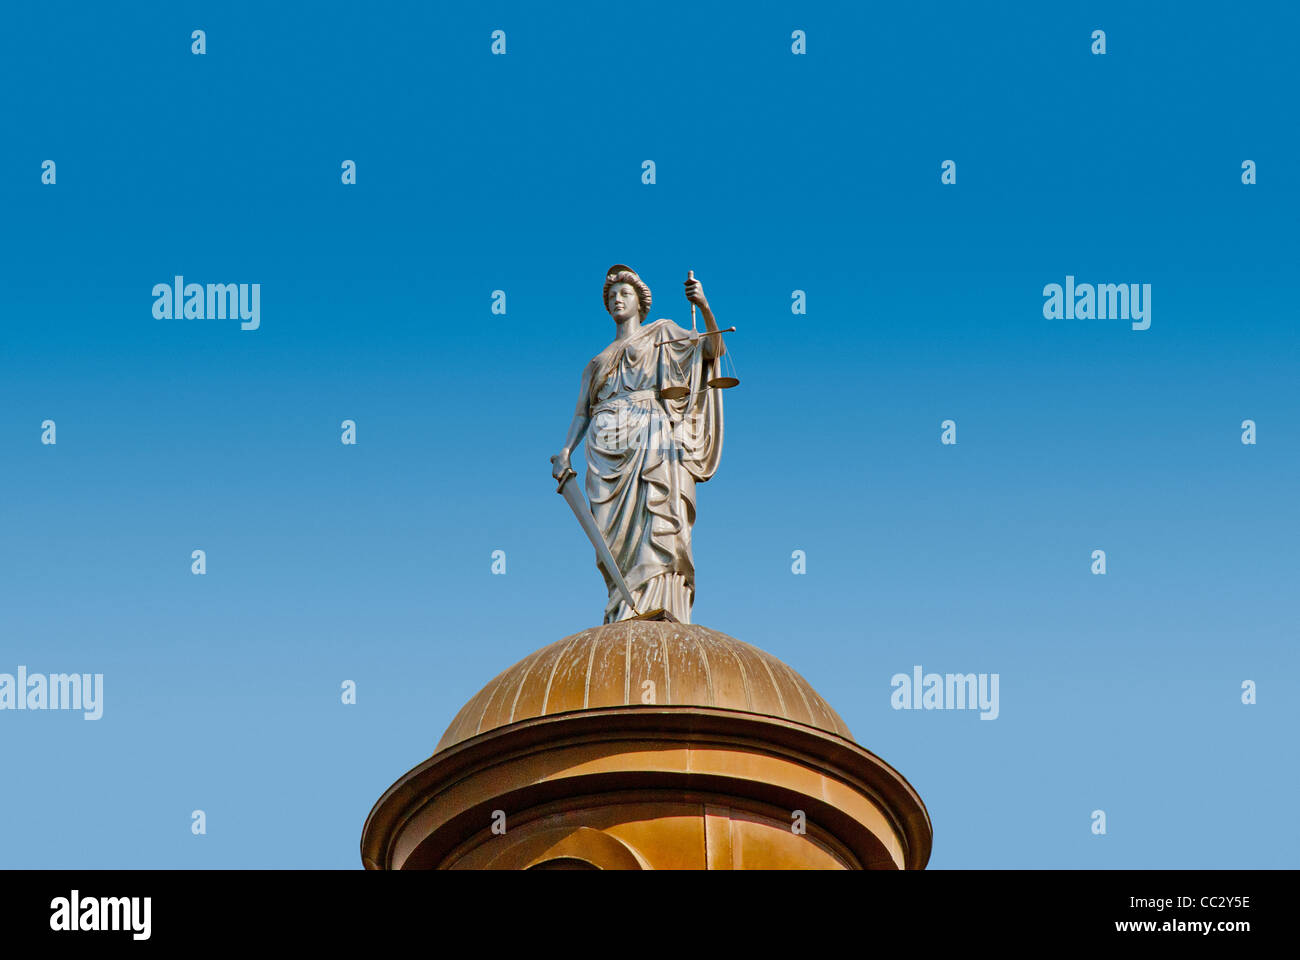 USA, Texas, San Marcos, Statue de la Justice sur le dessus de dôme en cuivre de 1908 Hays County Courthouse Banque D'Images